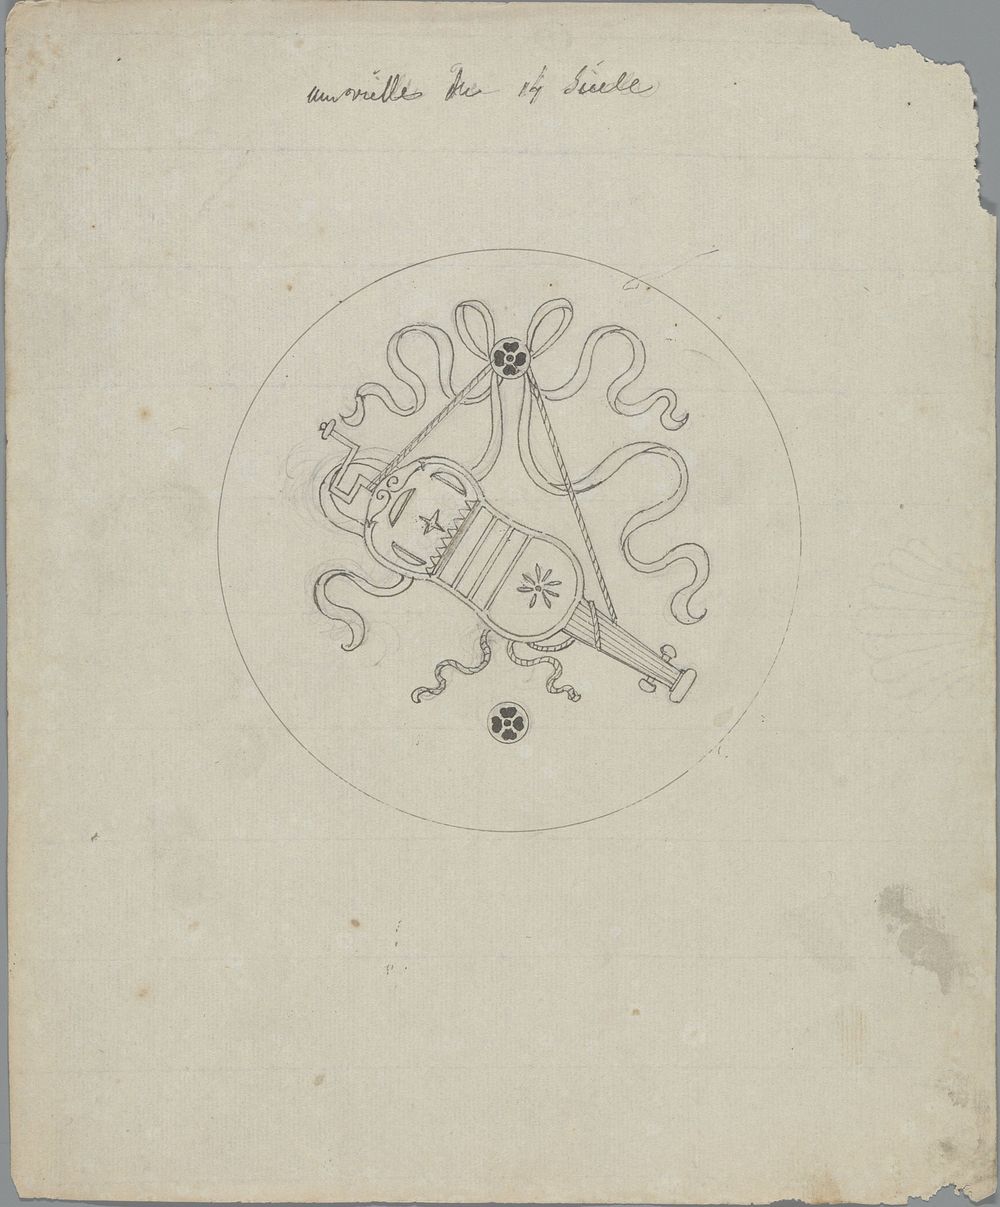 Une vielle du 14 siècle (in or before 1828) by Pierre Félix van Doren